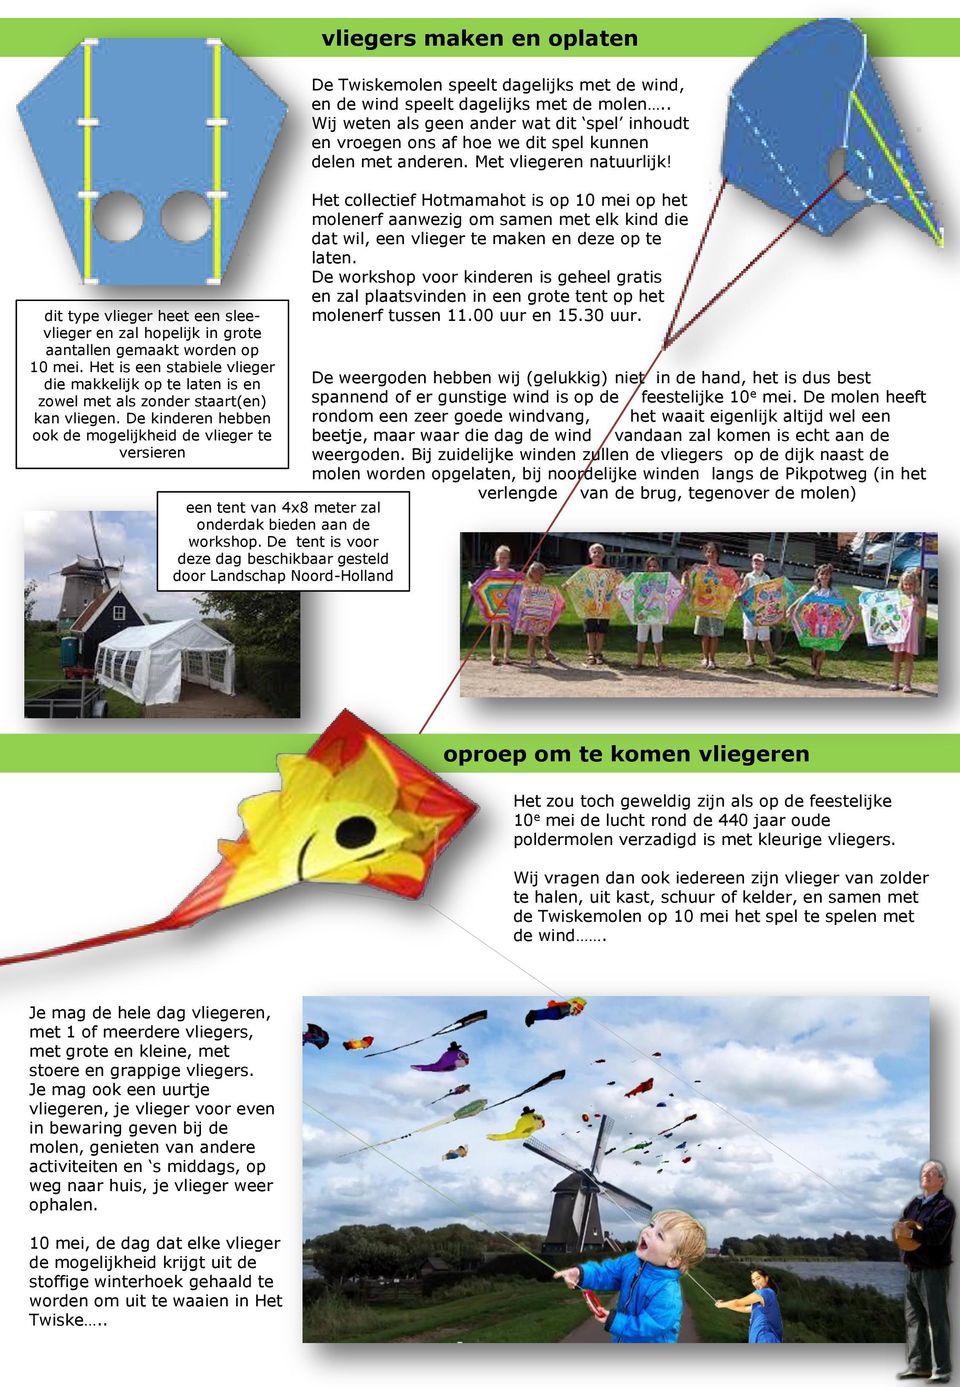 De kinderen hebben ook de mogelijkheid de vlieger te versieren een tent van 4x8 meter zal onderdak bieden aan de workshop.